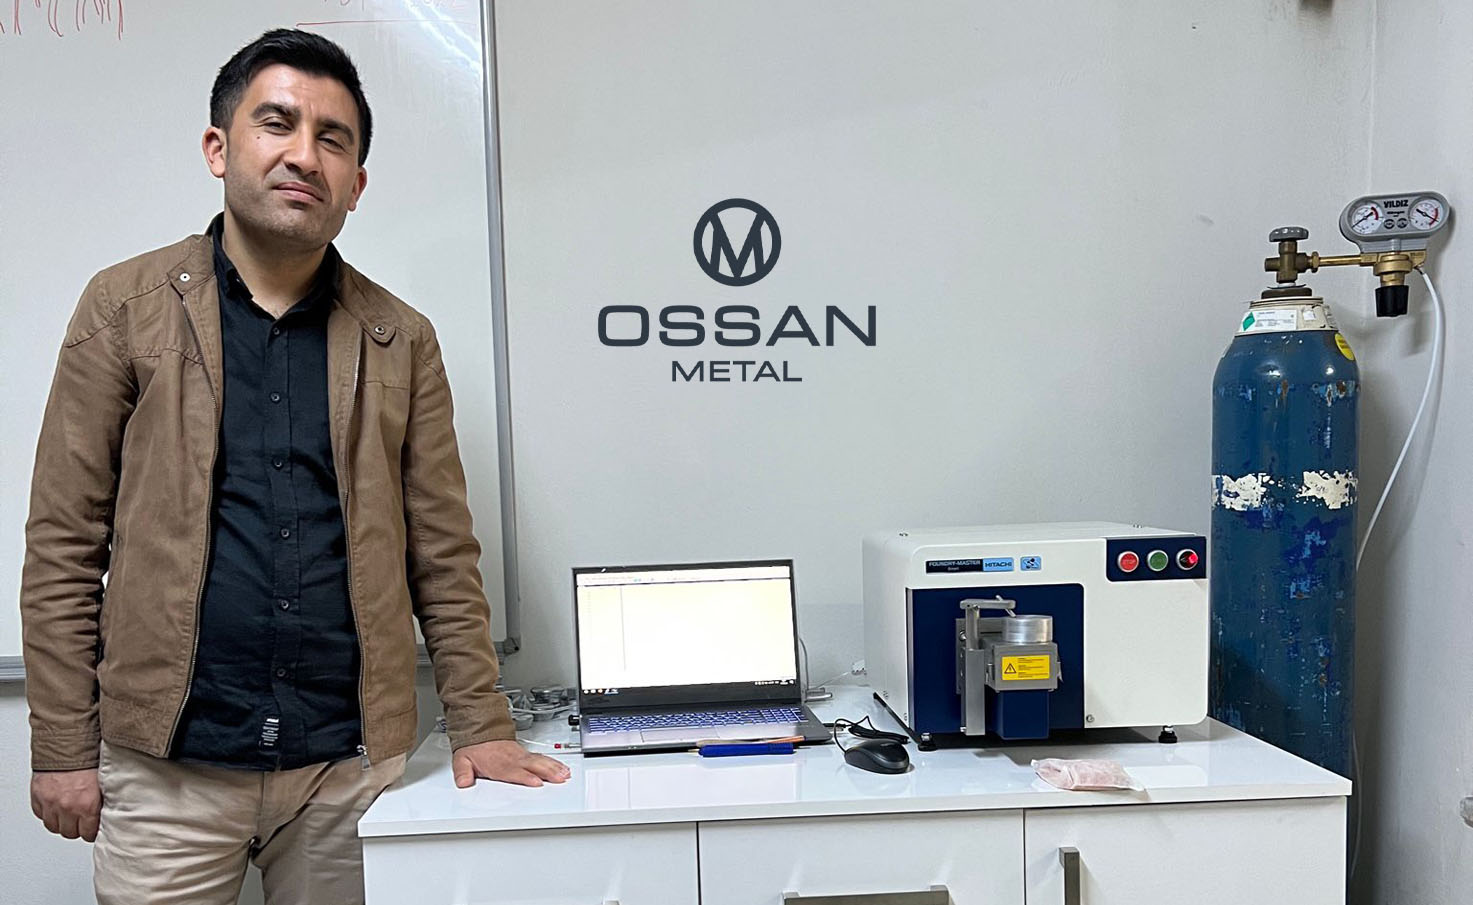 Ossan Metal, Alüminyum Külçe Üretim Kontrollerini Hitachi Foundry Master Smart Spektrometresiyle Yapmaya Başladı!